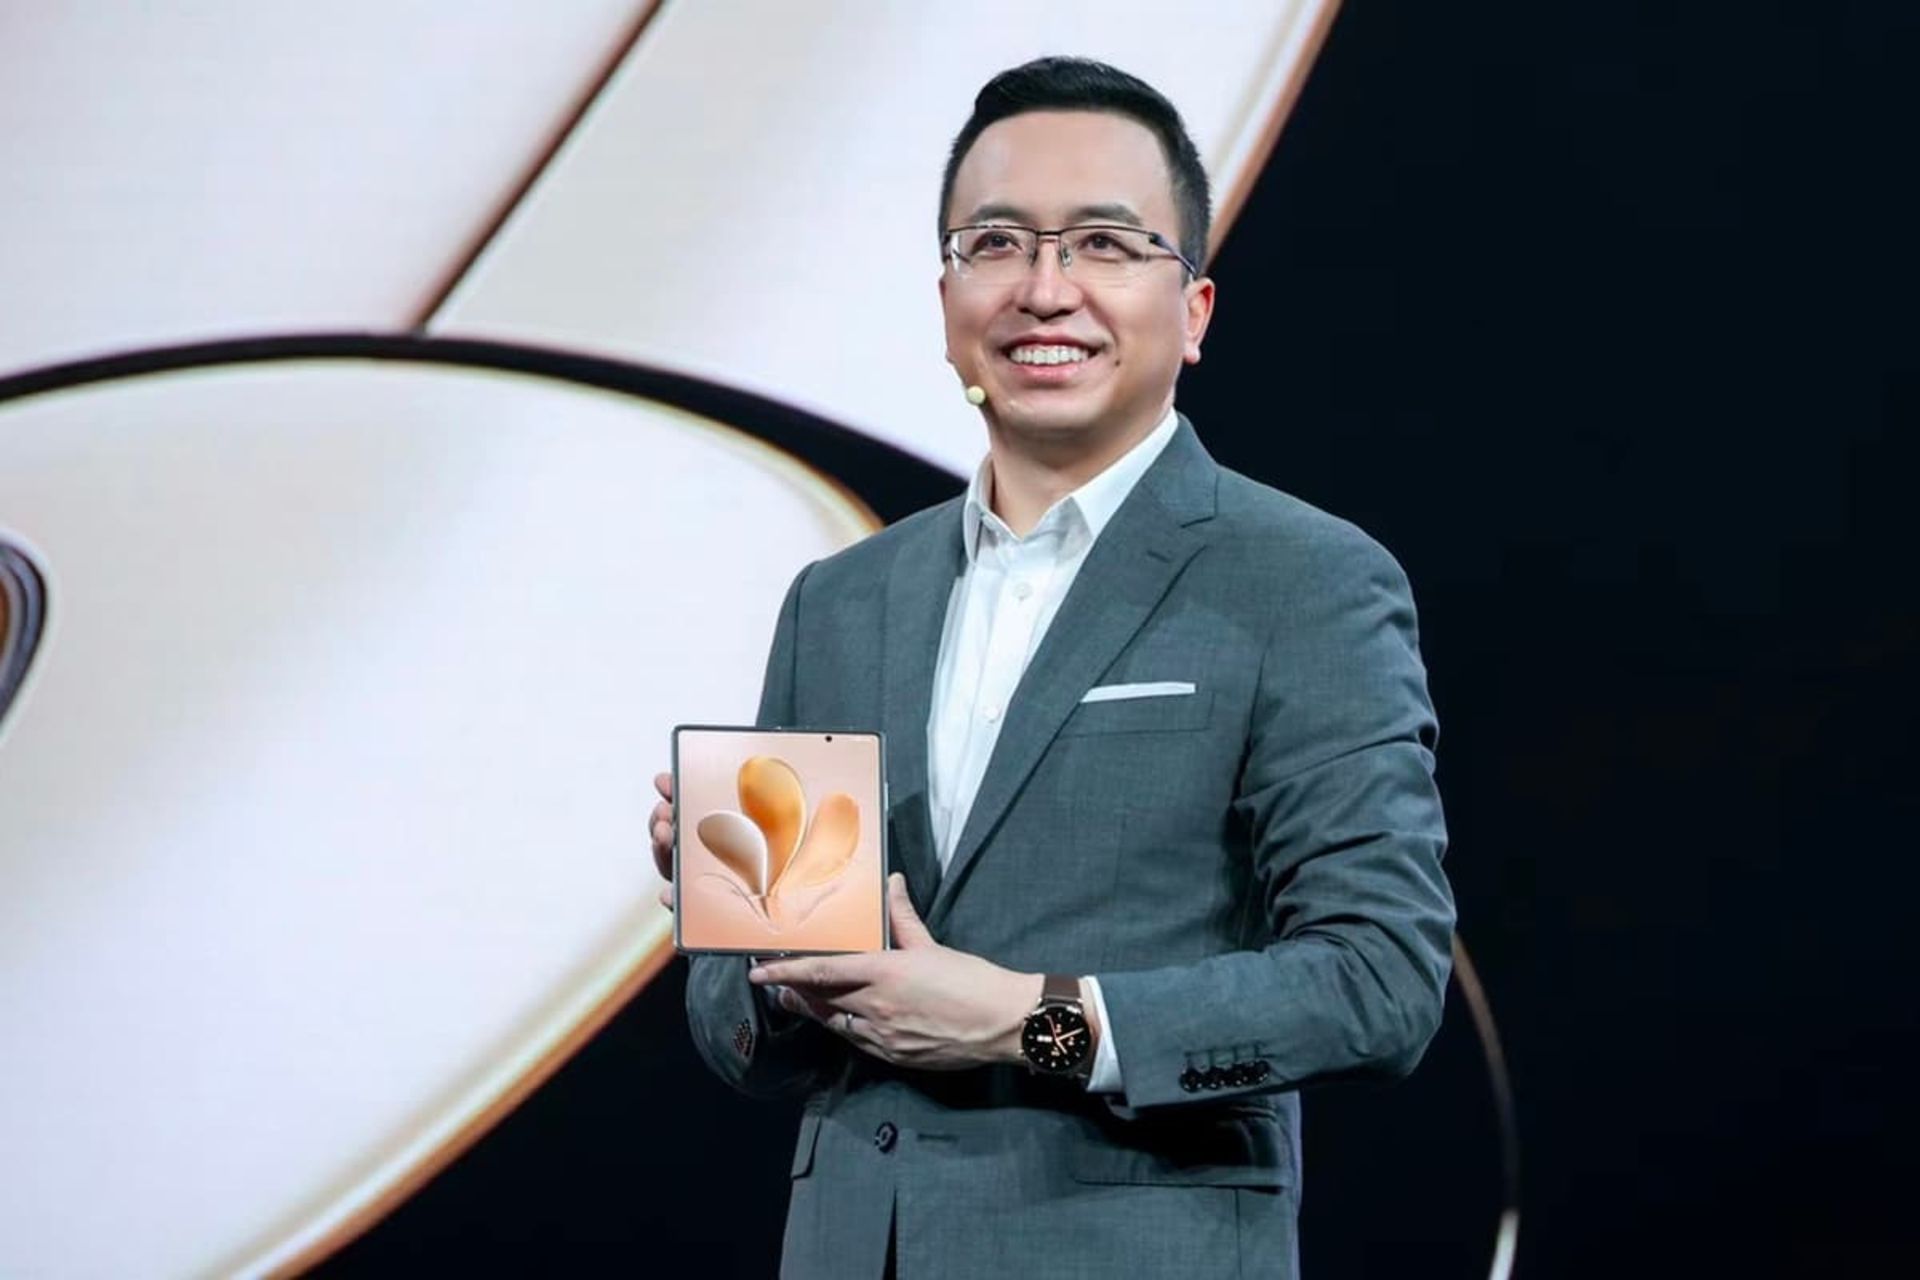 ژائو مینگ / Zhao Ming مدیرعامل آنر با کت شلوار و لبخند